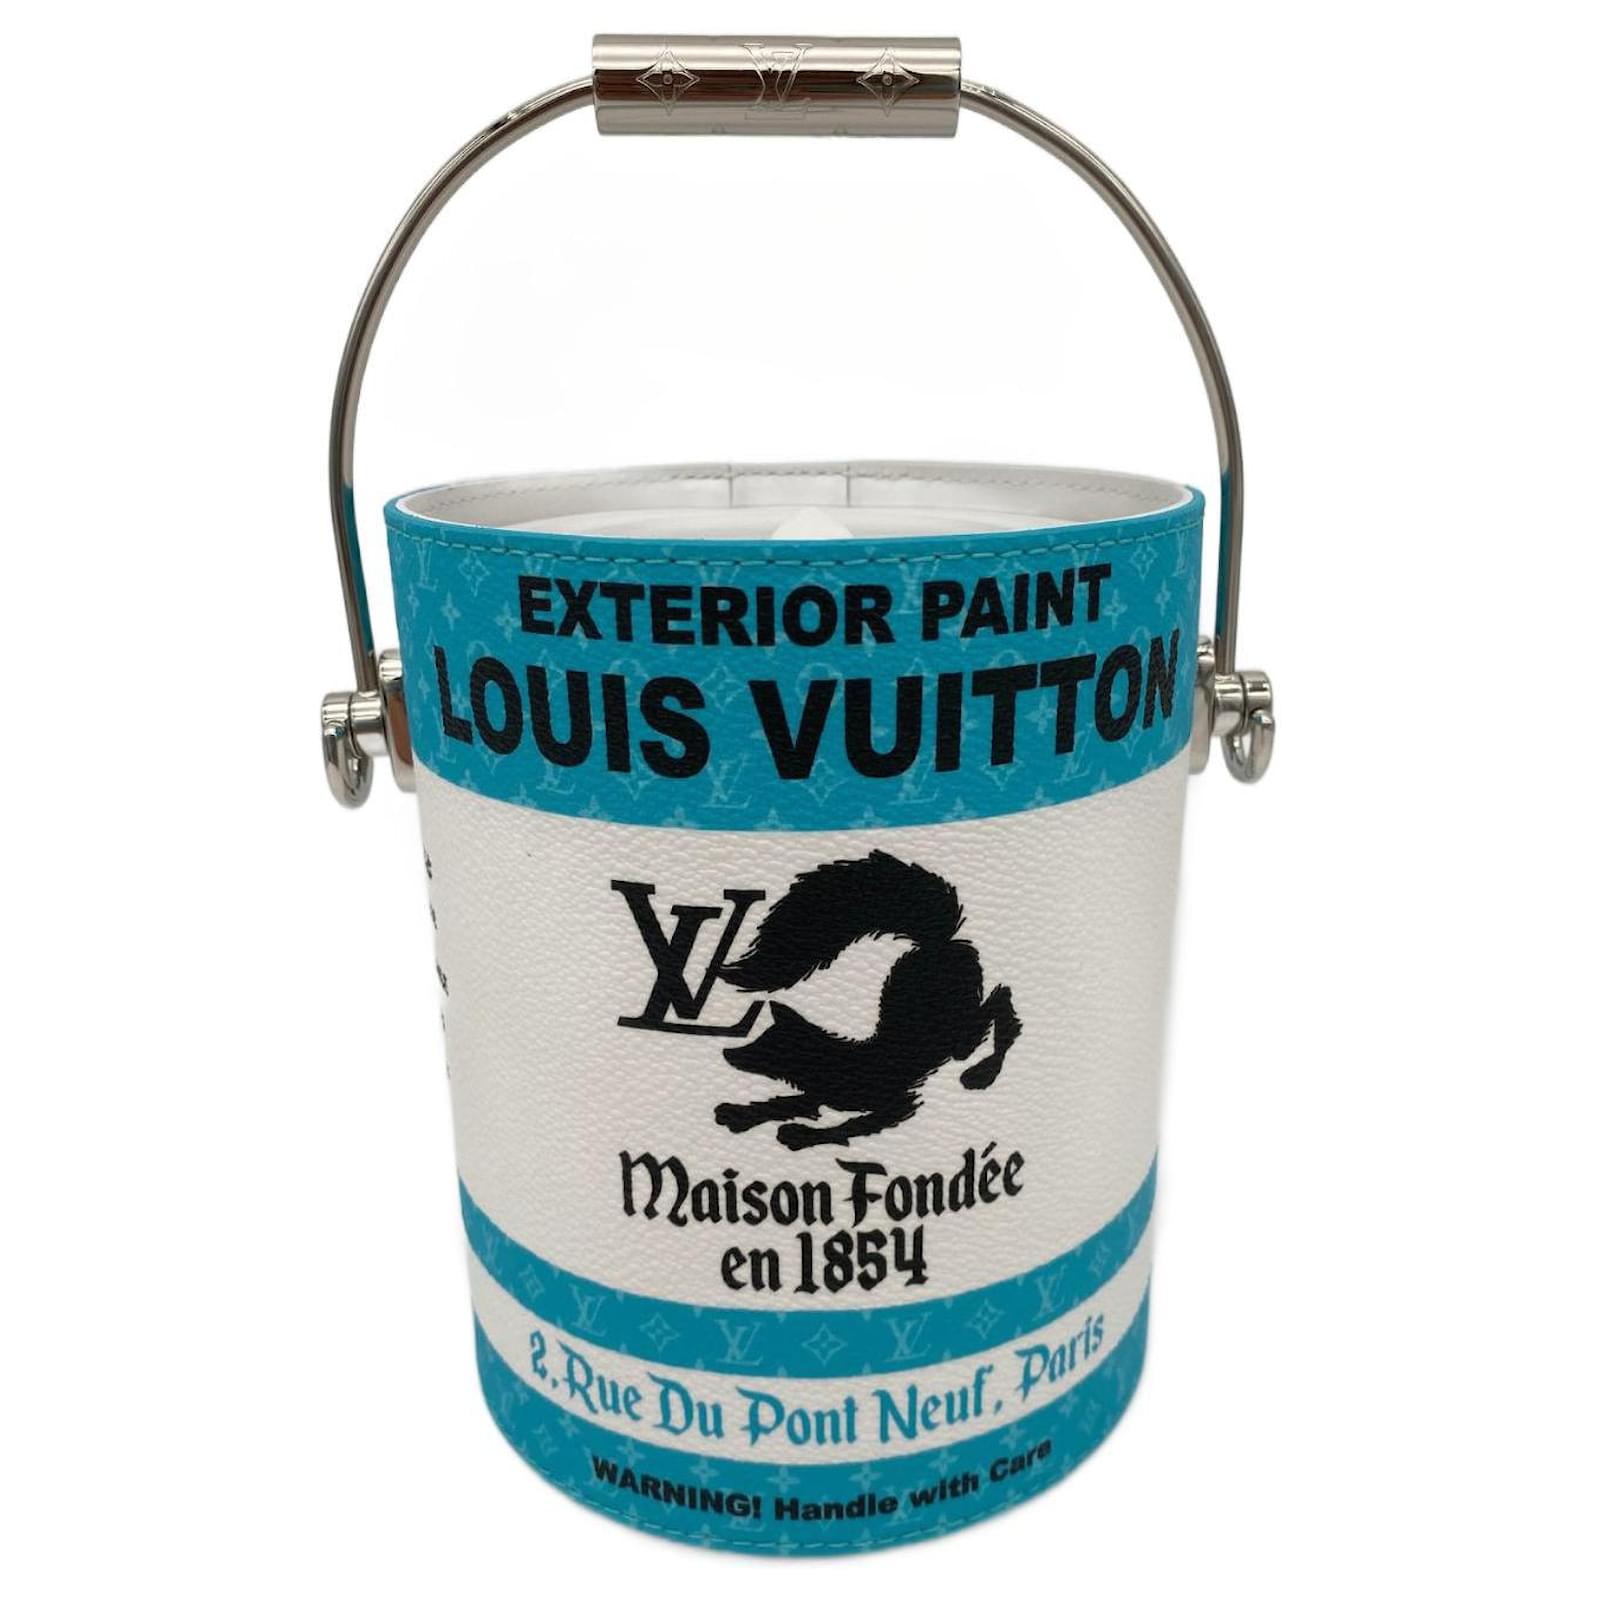 Louis Vuitton convierte sus carteras en latas de pintura y